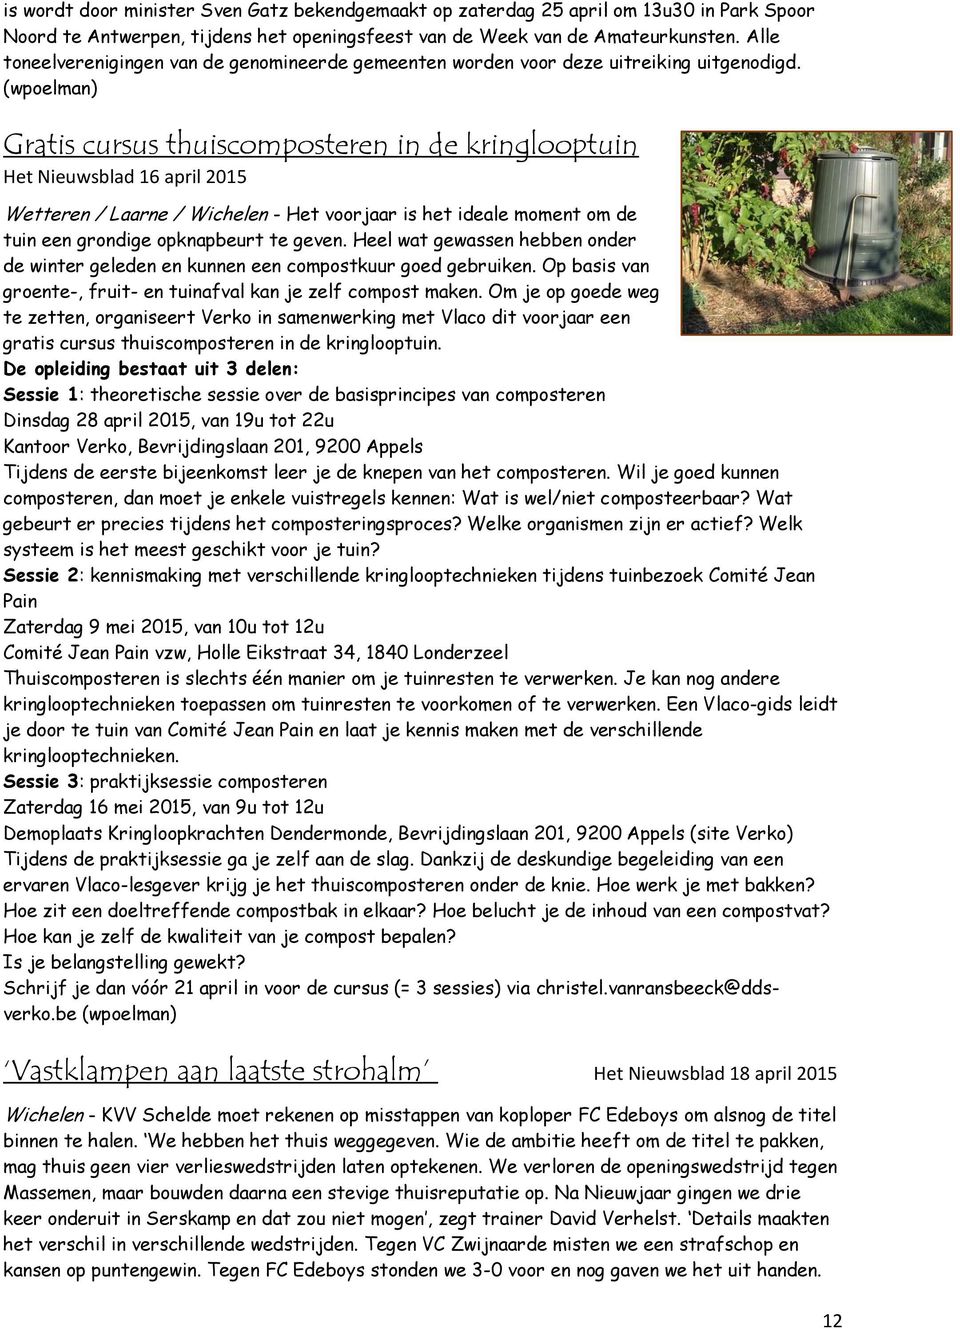 (wpoelman) Gratis cursus thuiscomposteren in de kringlooptuin Het Nieuwsblad 16 april 2015 Wetteren / Laarne / Wichelen - Het voorjaar is het ideale moment om de tuin een grondige opknapbeurt te